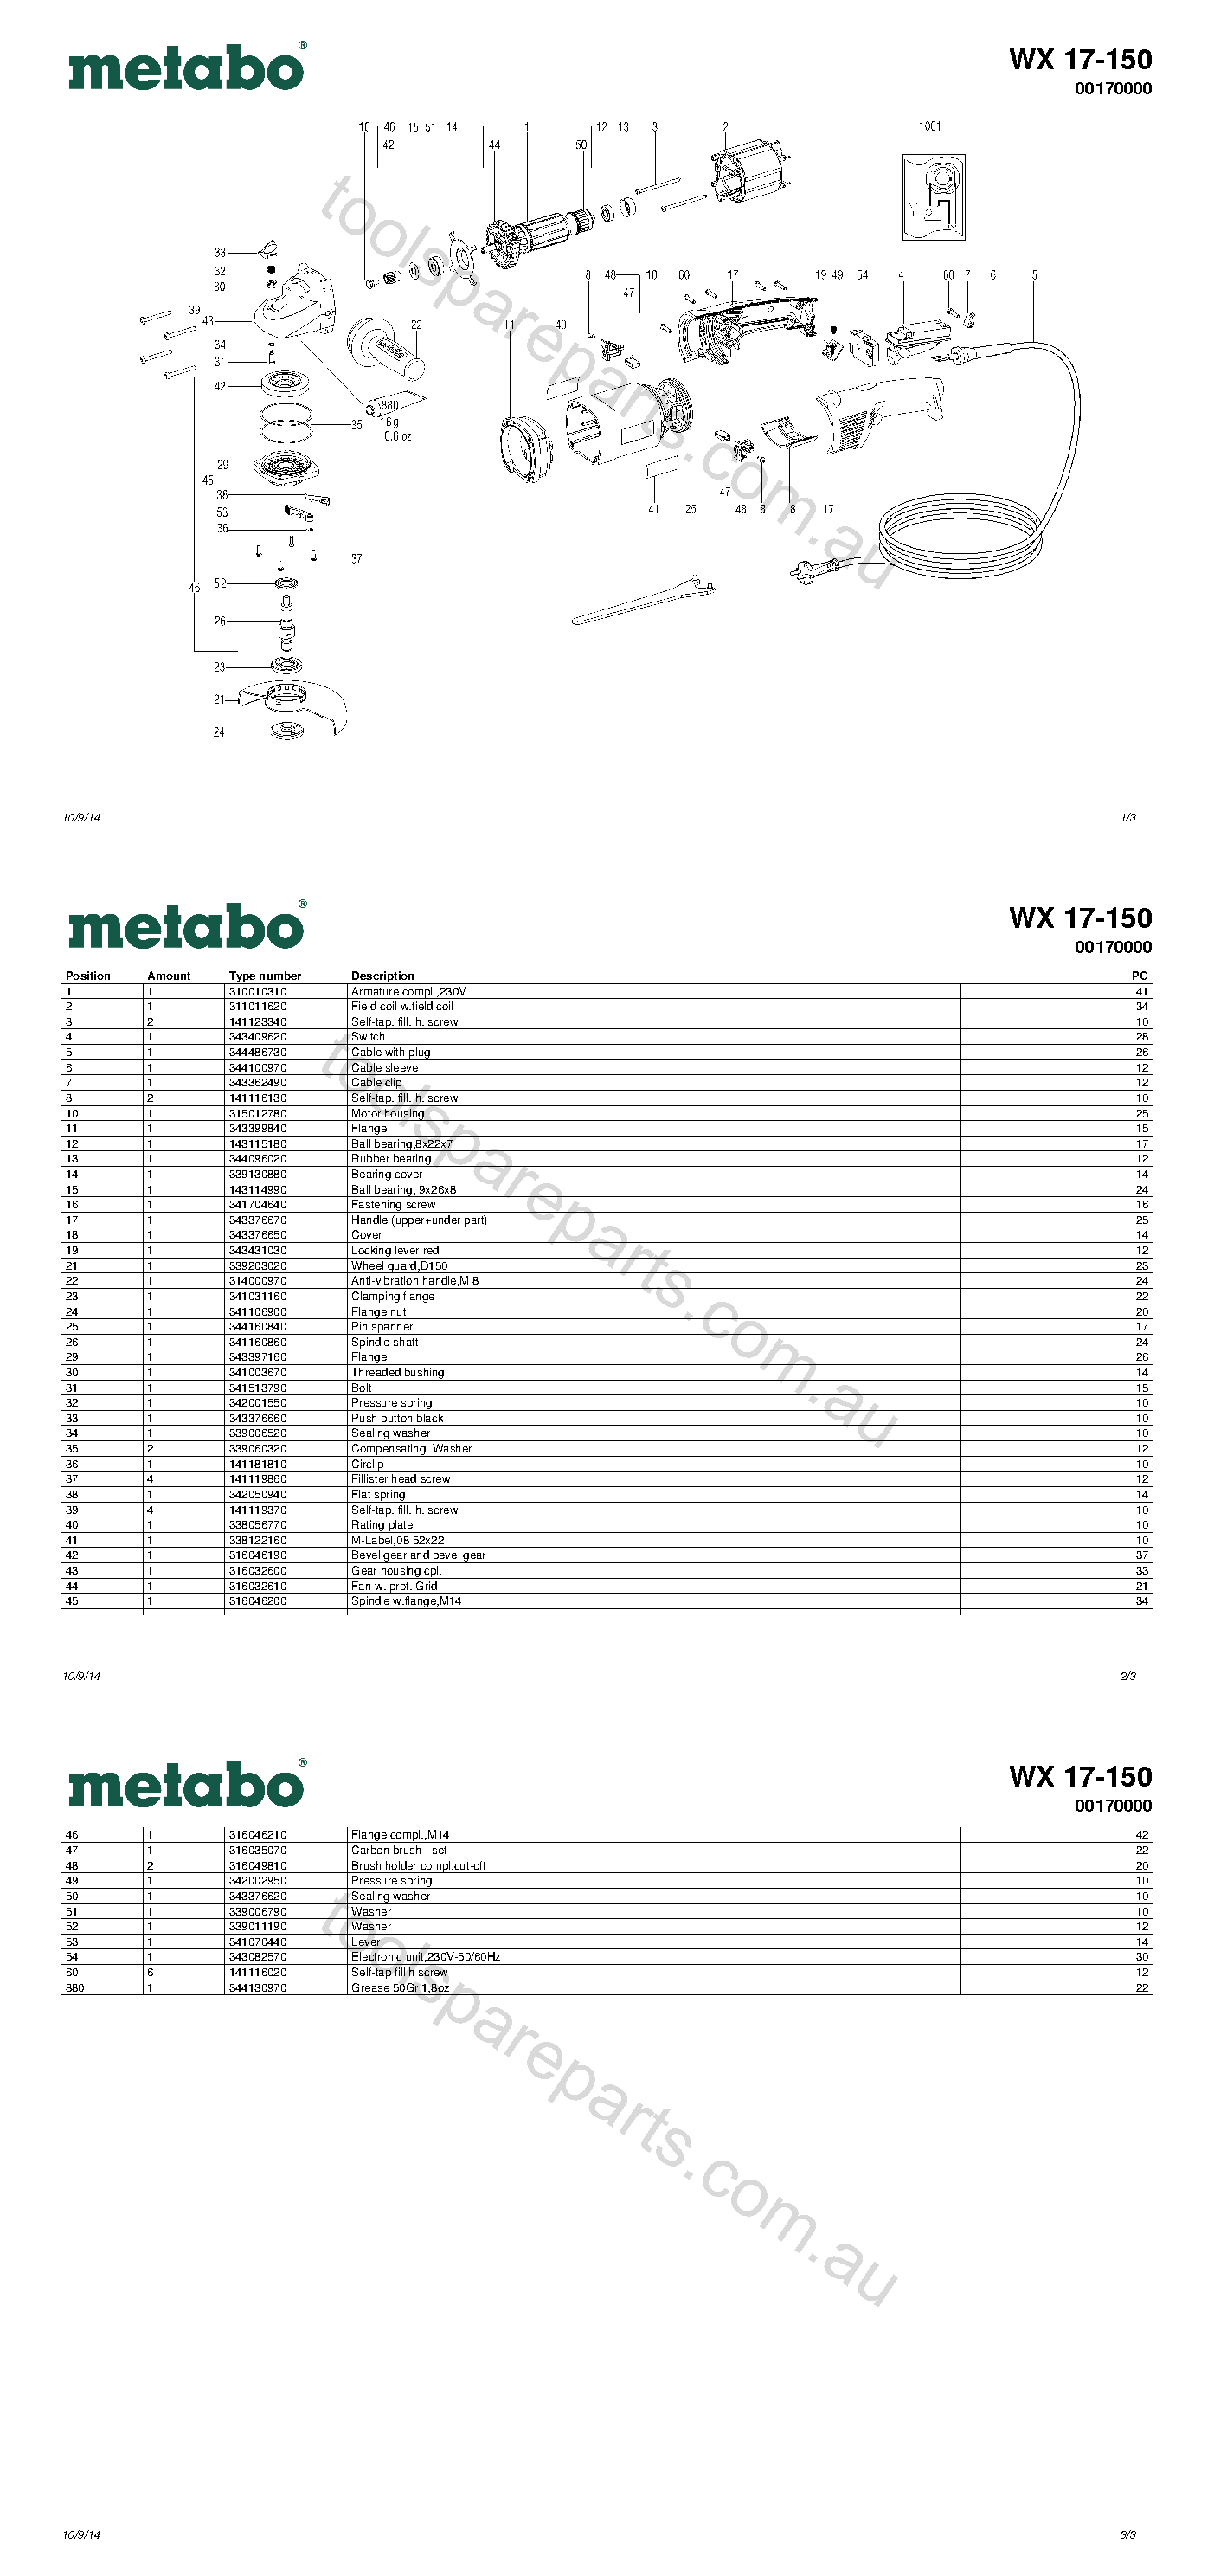 Metabo WX 17-150 00170000  Diagram 1